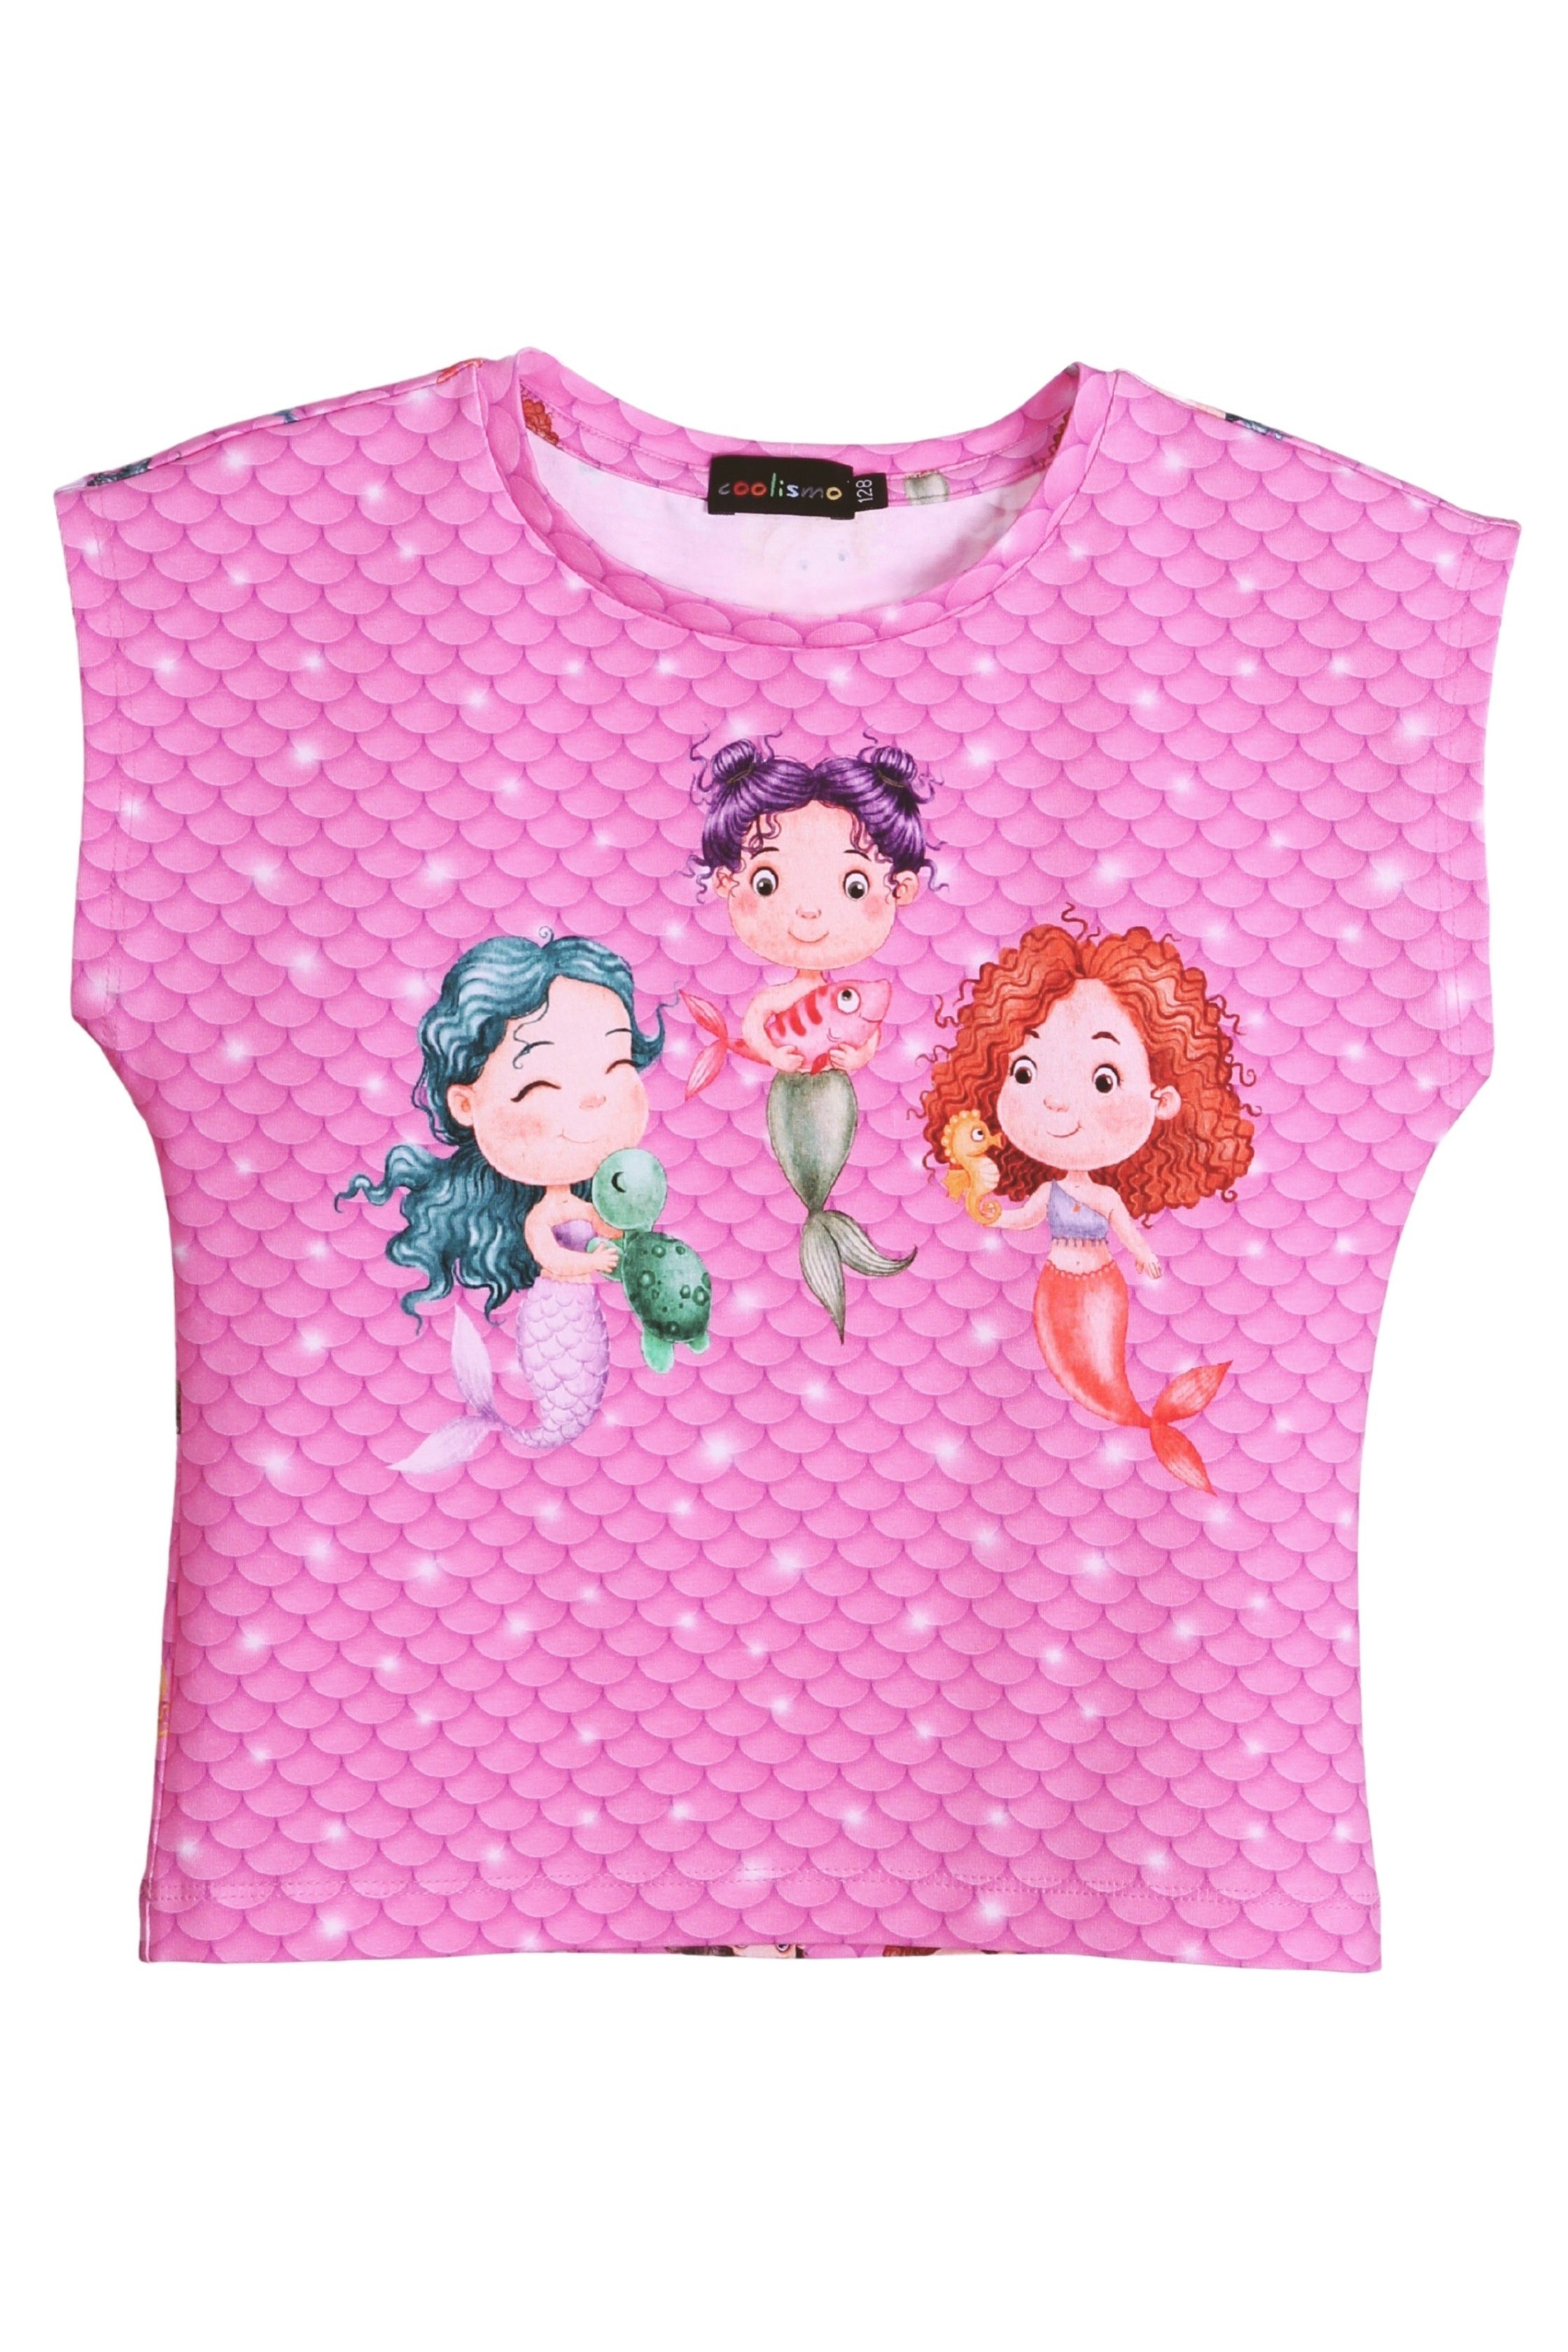 coolismo T-Shirt Print-Shirt Baumwolle, Motiv für Mädchen Meerjungfrau europäische Produktion